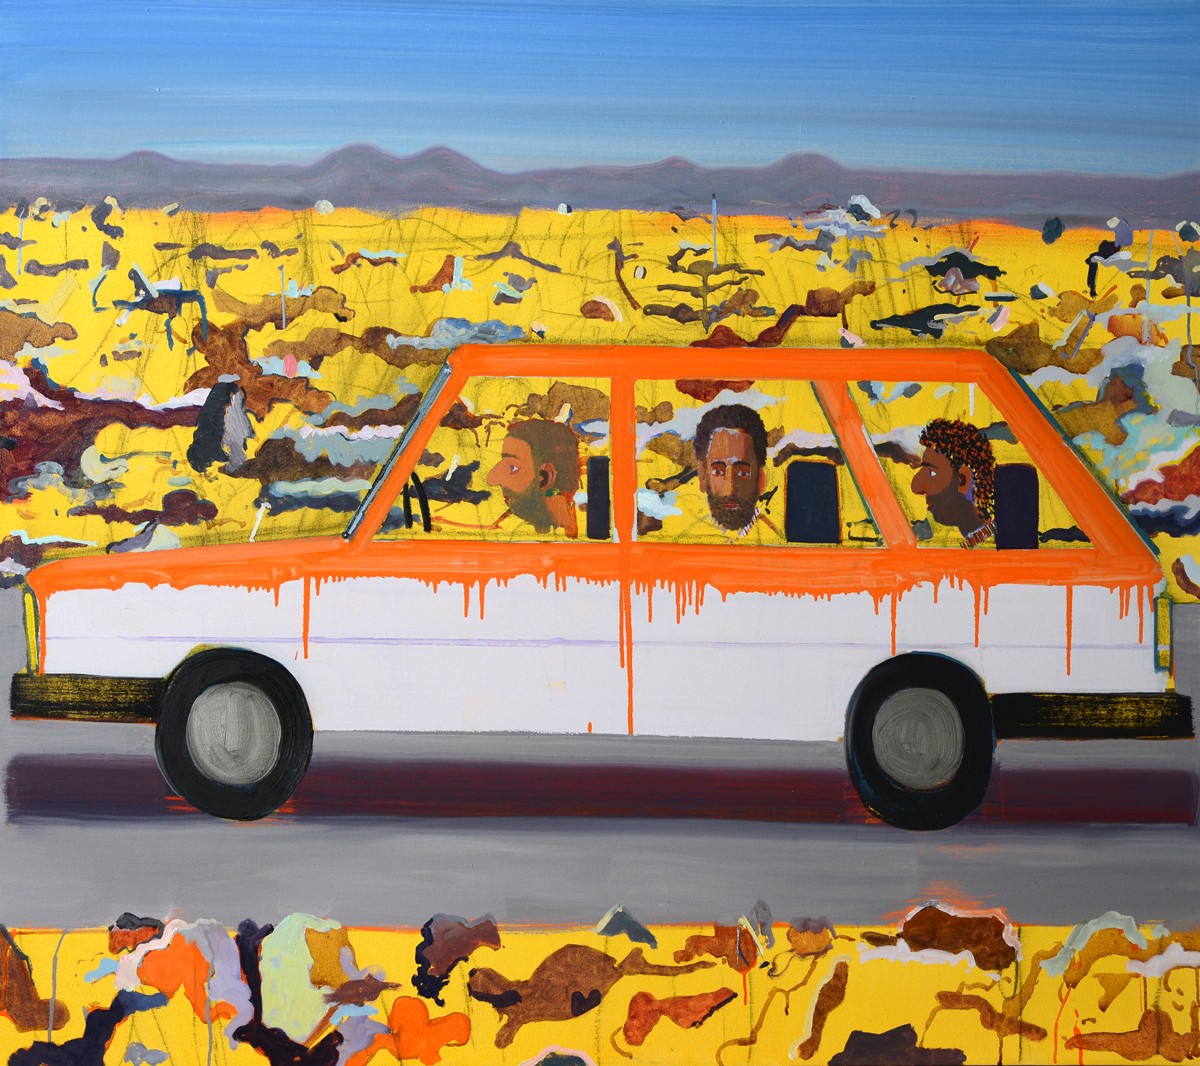 Alon Kedem, Hamudi Tours, 2018, Oil on canvas, 110x130 cm, $7,500